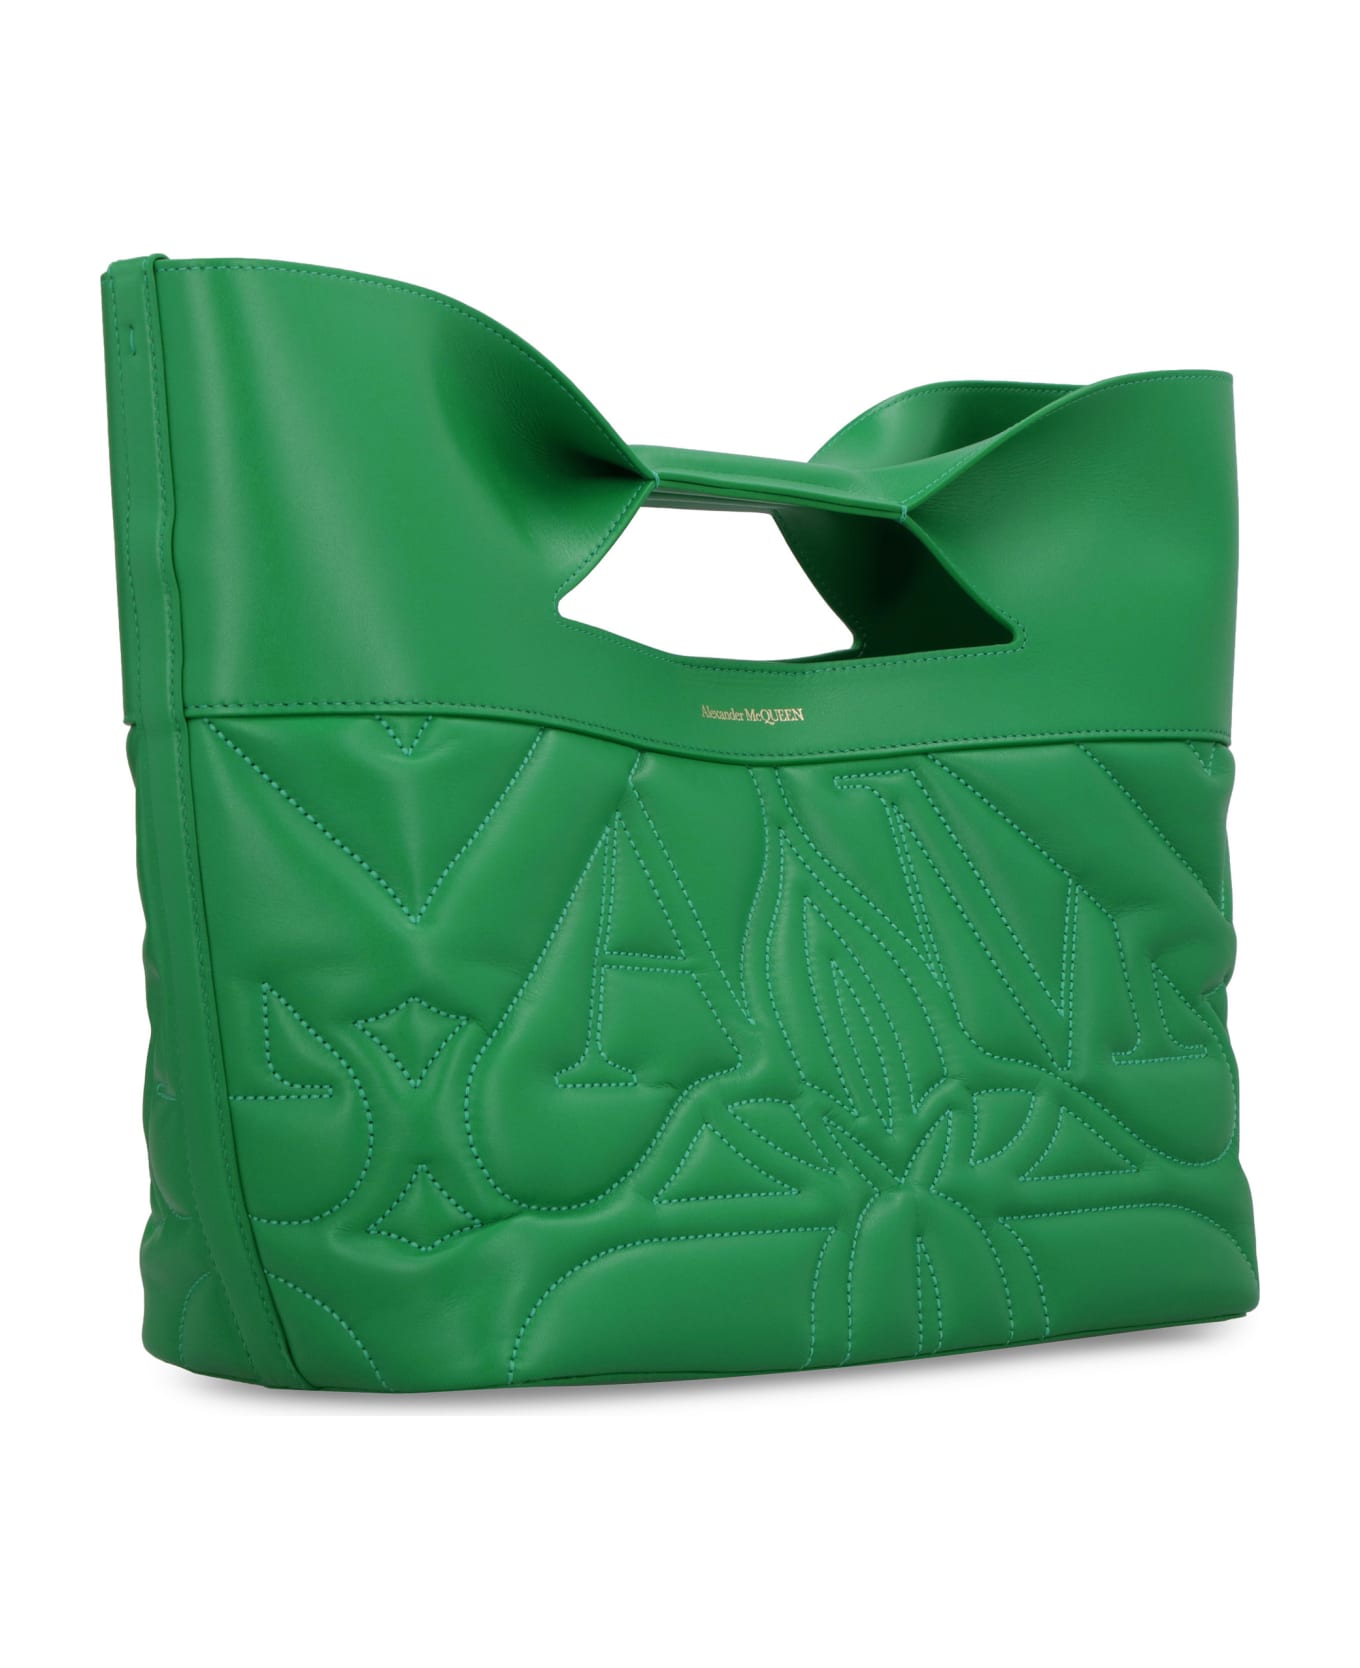 Alexander McQueen The Bow Handbag - green トートバッグ